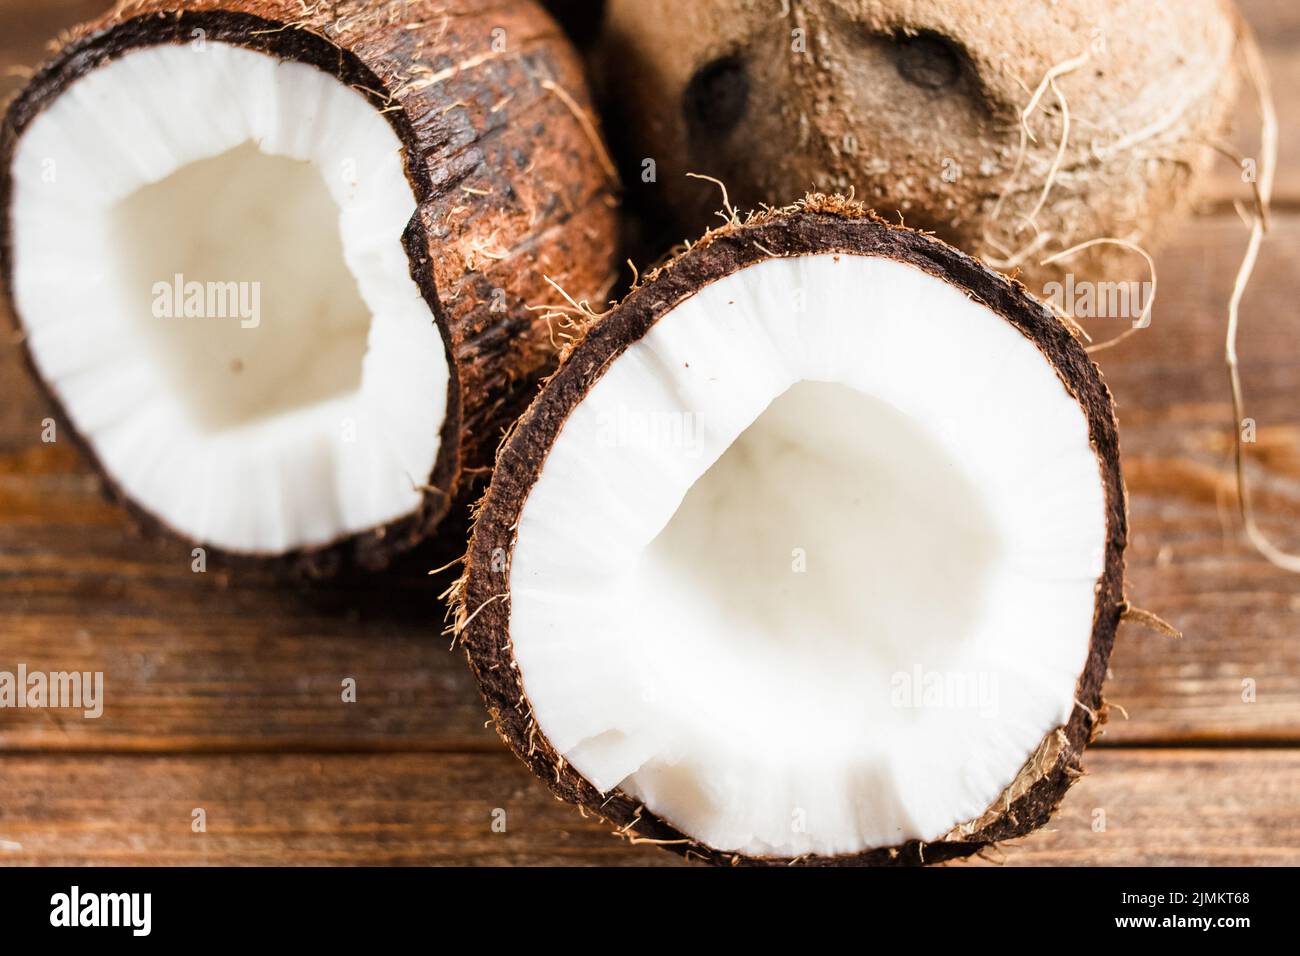 Exotische Früchte gesunde Lebensmittel Zutat Kokosnuss Stockfoto